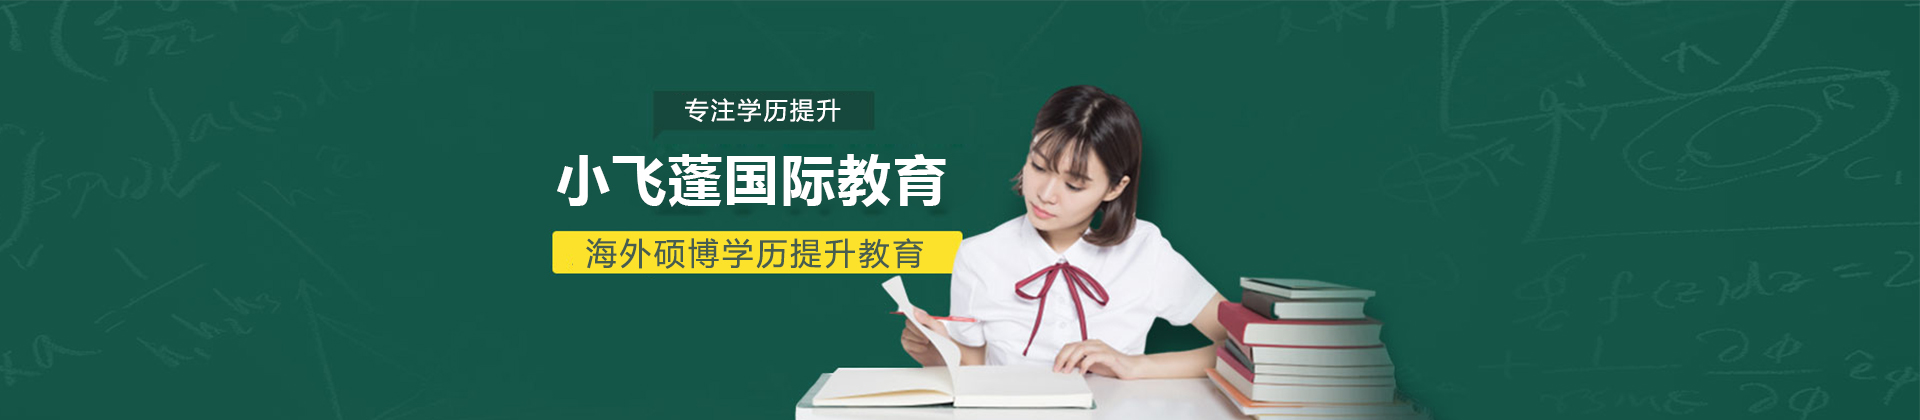 上海小飞蓬国际教育